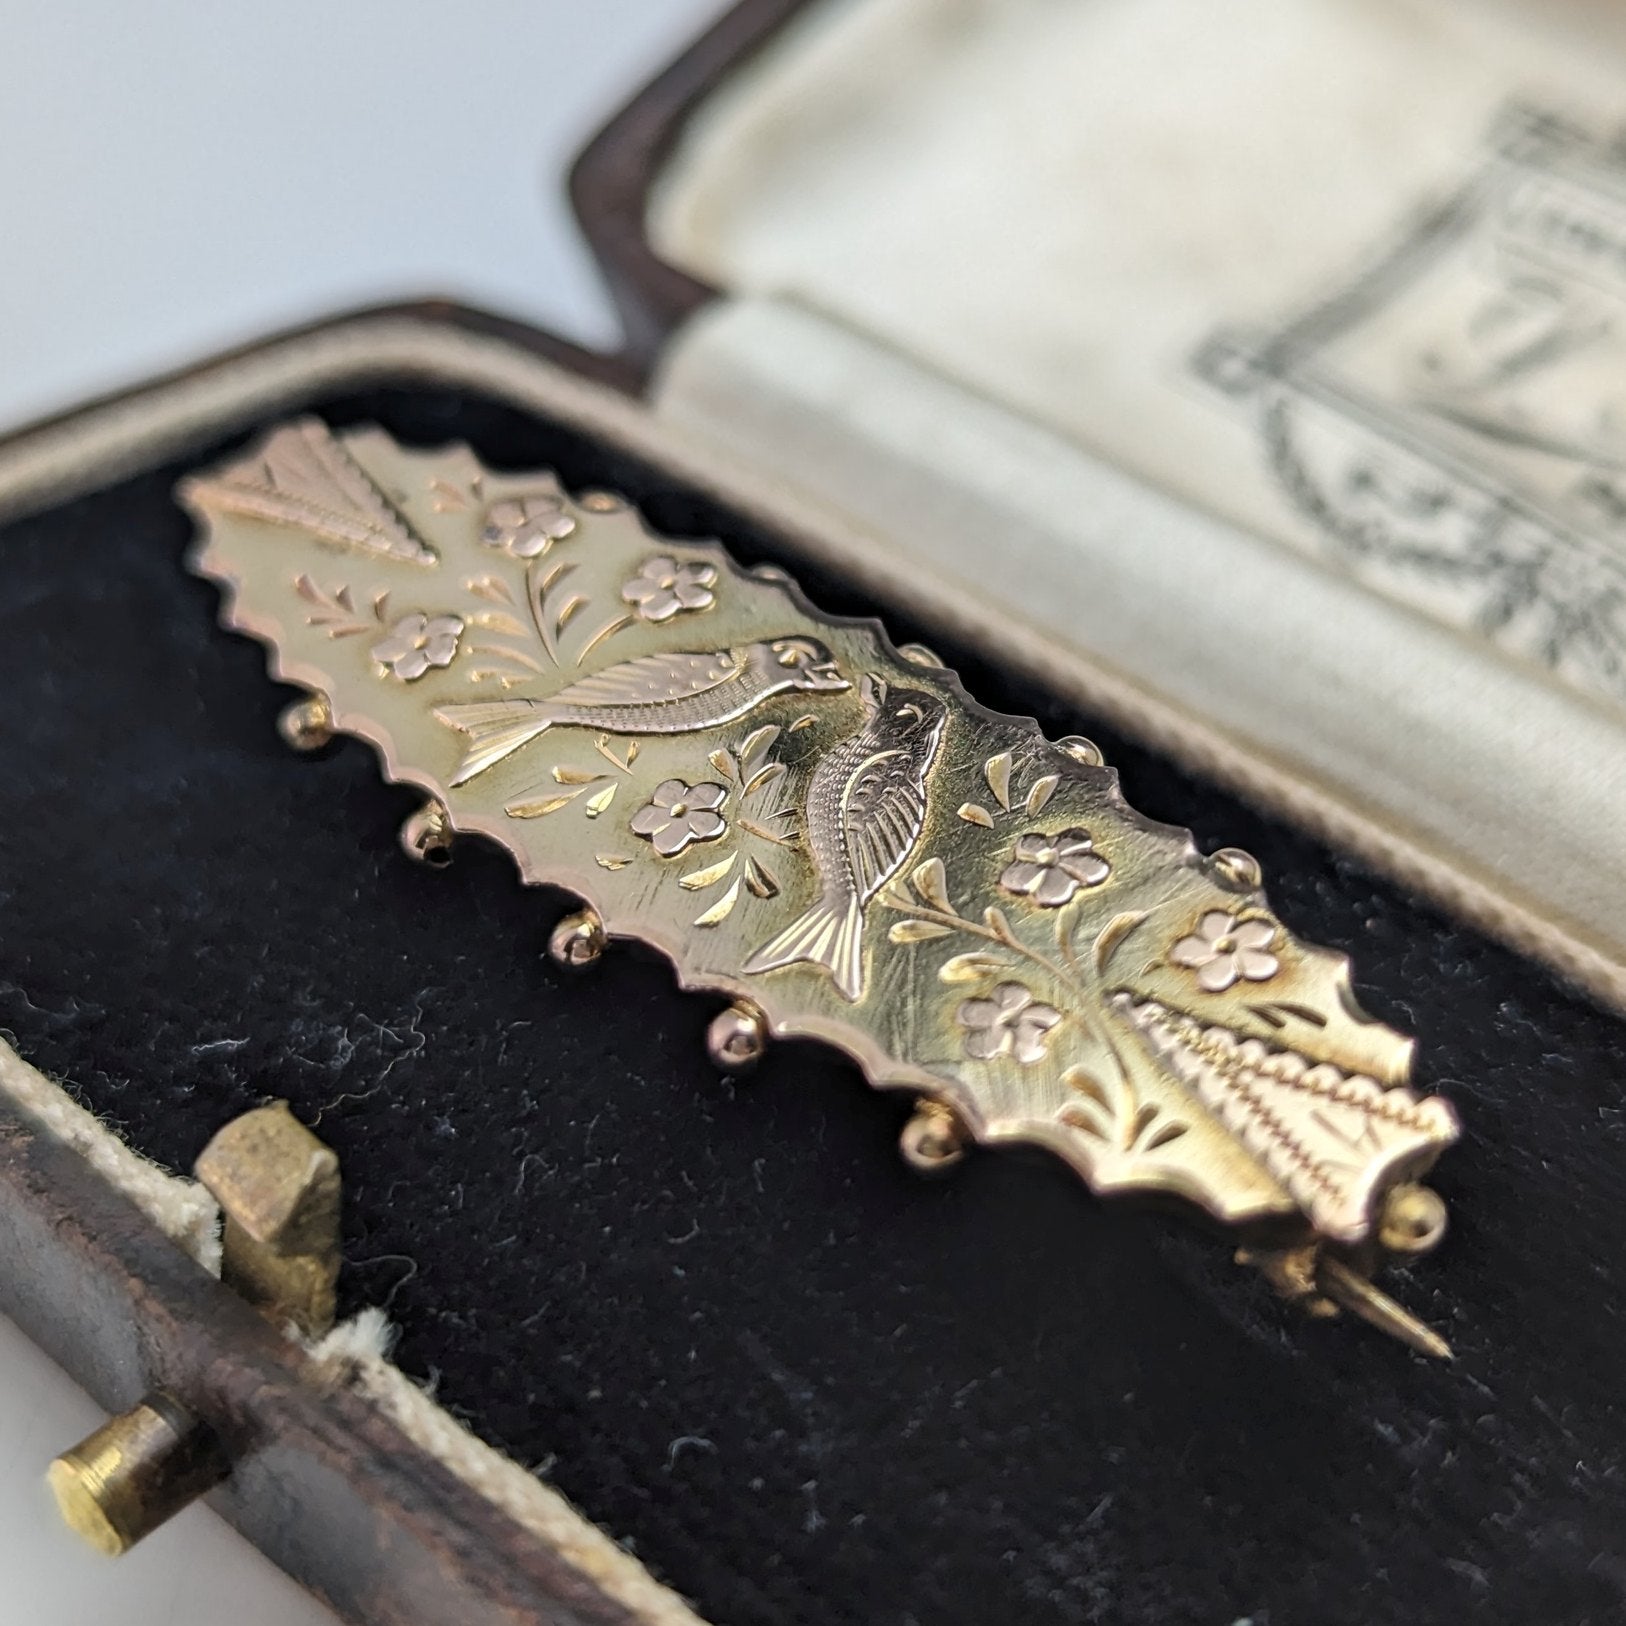 1875年頃 英国アンティーク 9ctゴールド製 小鳥装飾 ピンブローチ ケース入